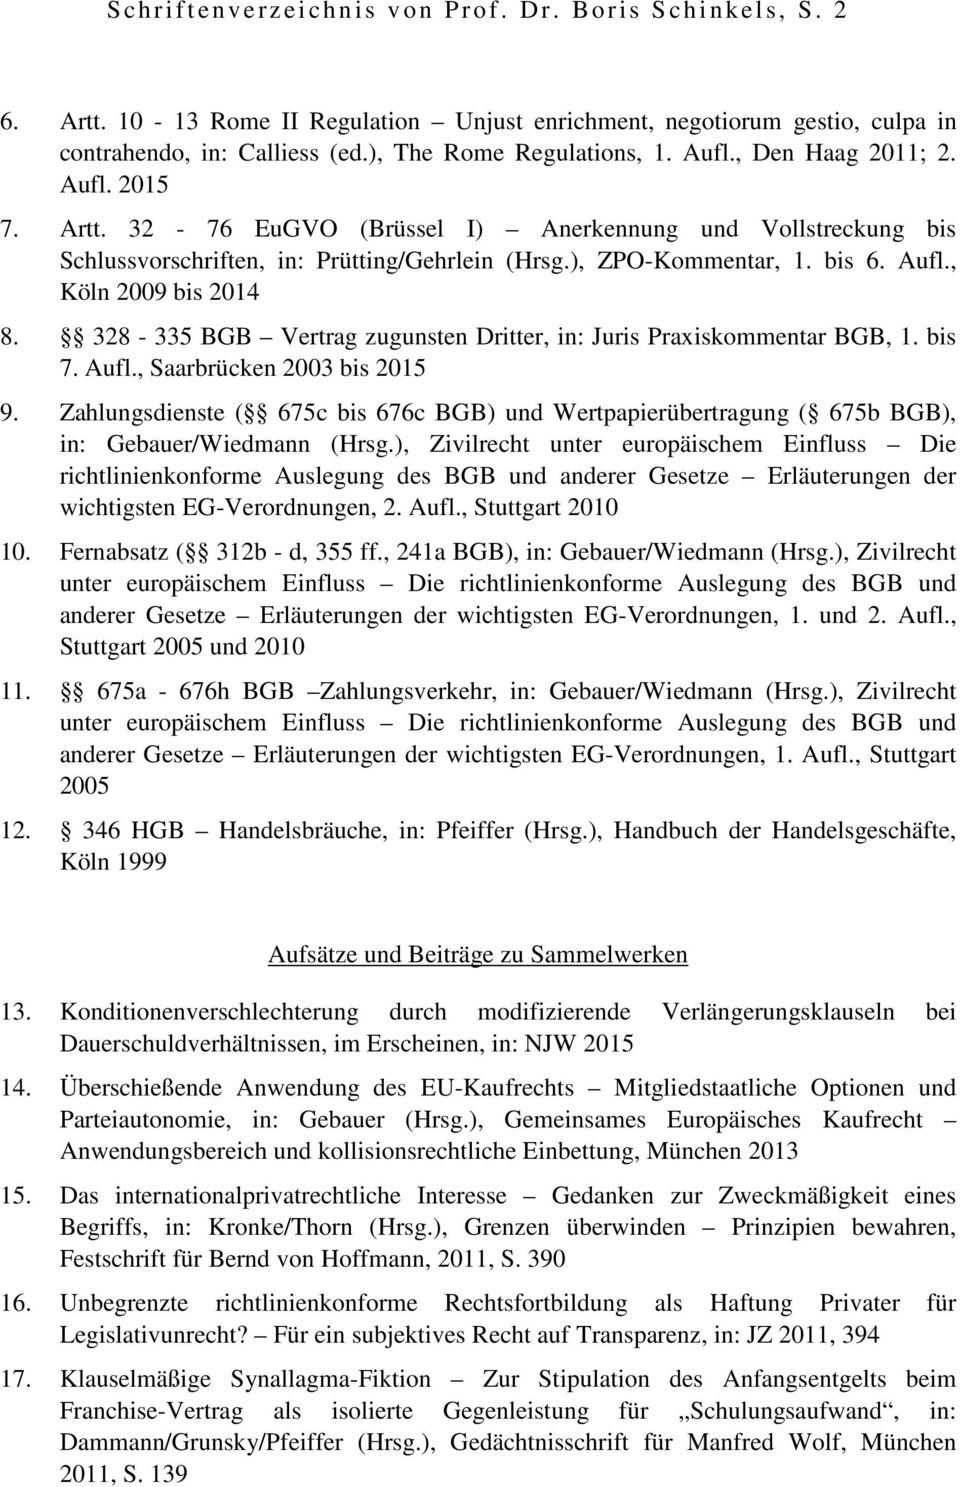 bis 6. Aufl., Köln 2009 bis 2014 8. 328-335 BGB Vertrag zugunsten Dritter, in: Juris Praxiskommentar BGB, 1. bis 7. Aufl., Saarbrücken 2003 bis 2015 9.